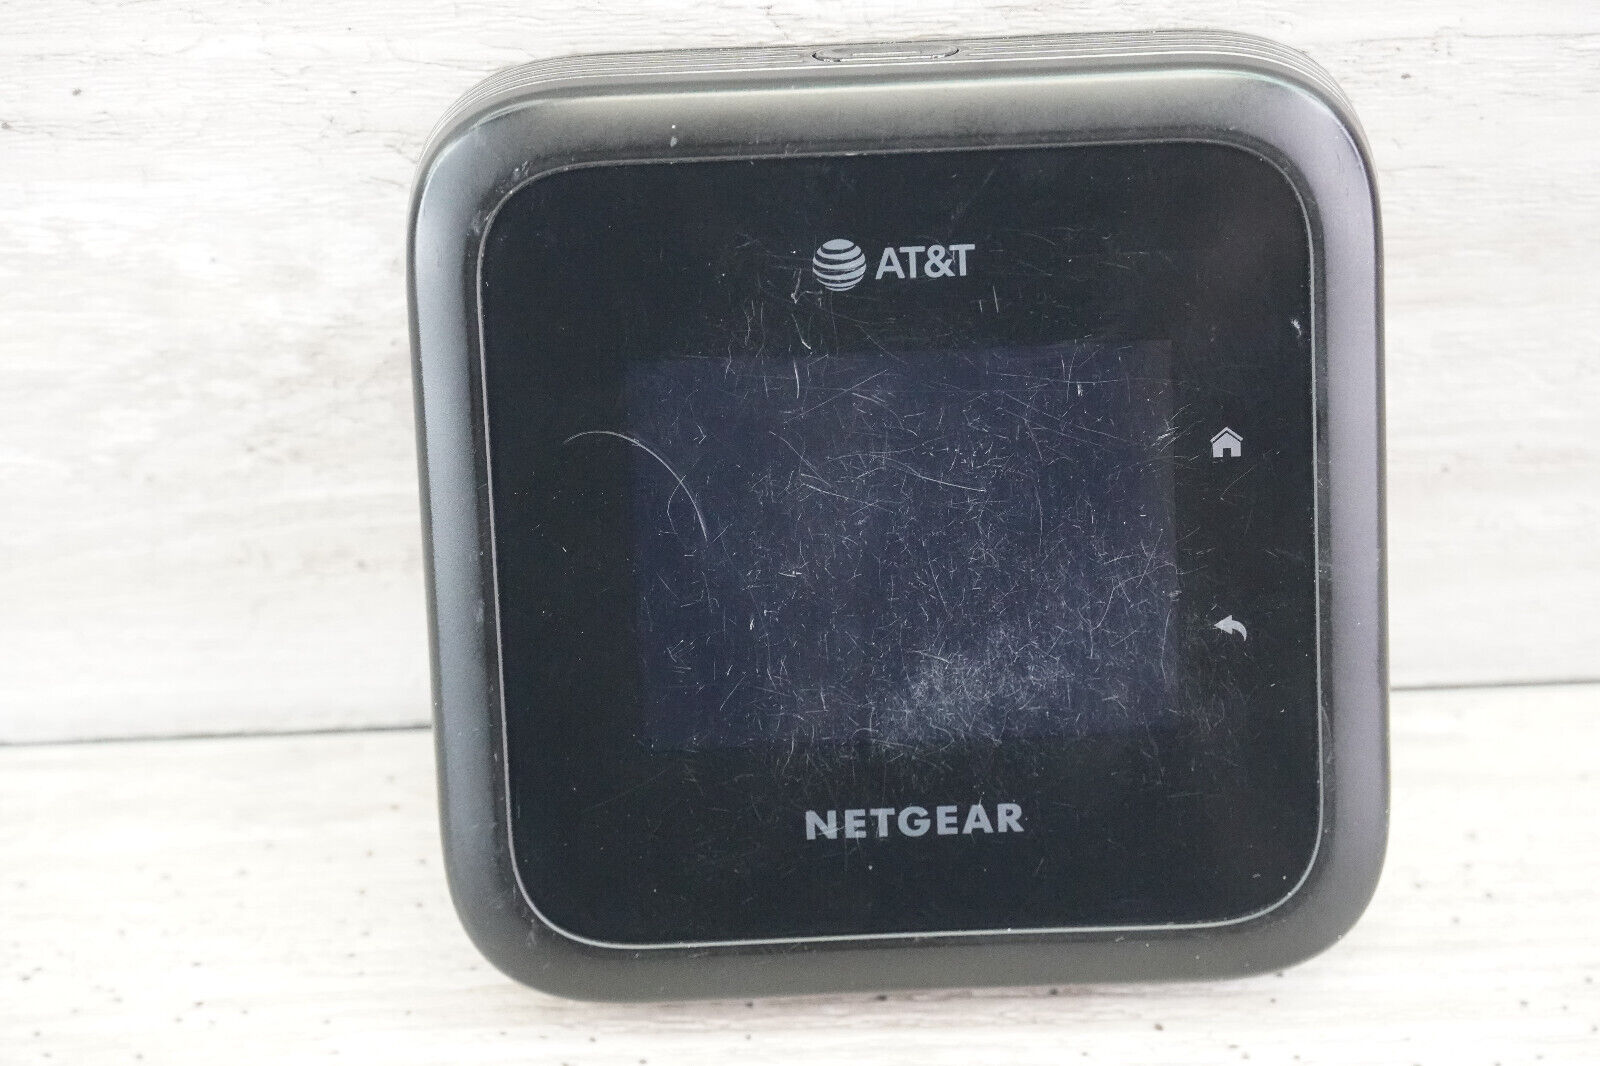 NETGEAR Nighthawk M6 Pro MR6500 AT&T 5G Wi-Fi Router - Black